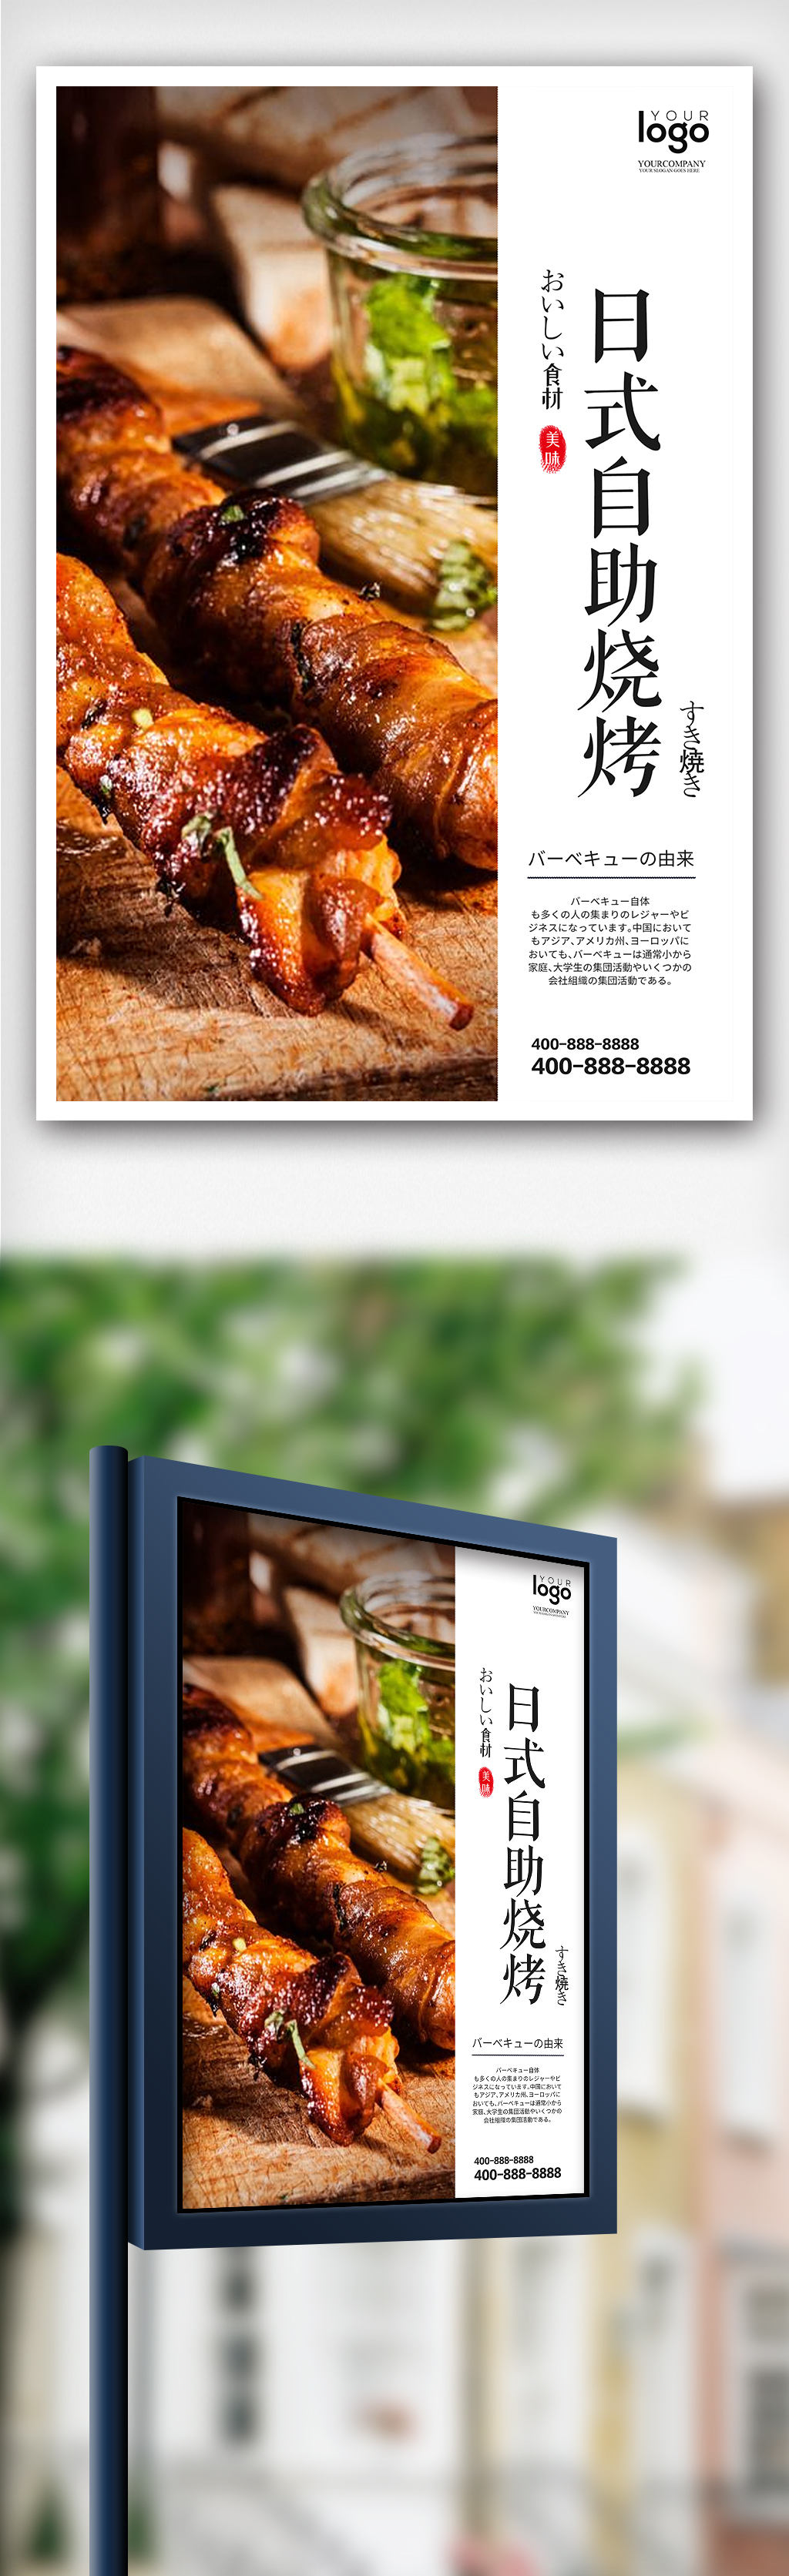 创意日式风格自助烧烤户外海报图片